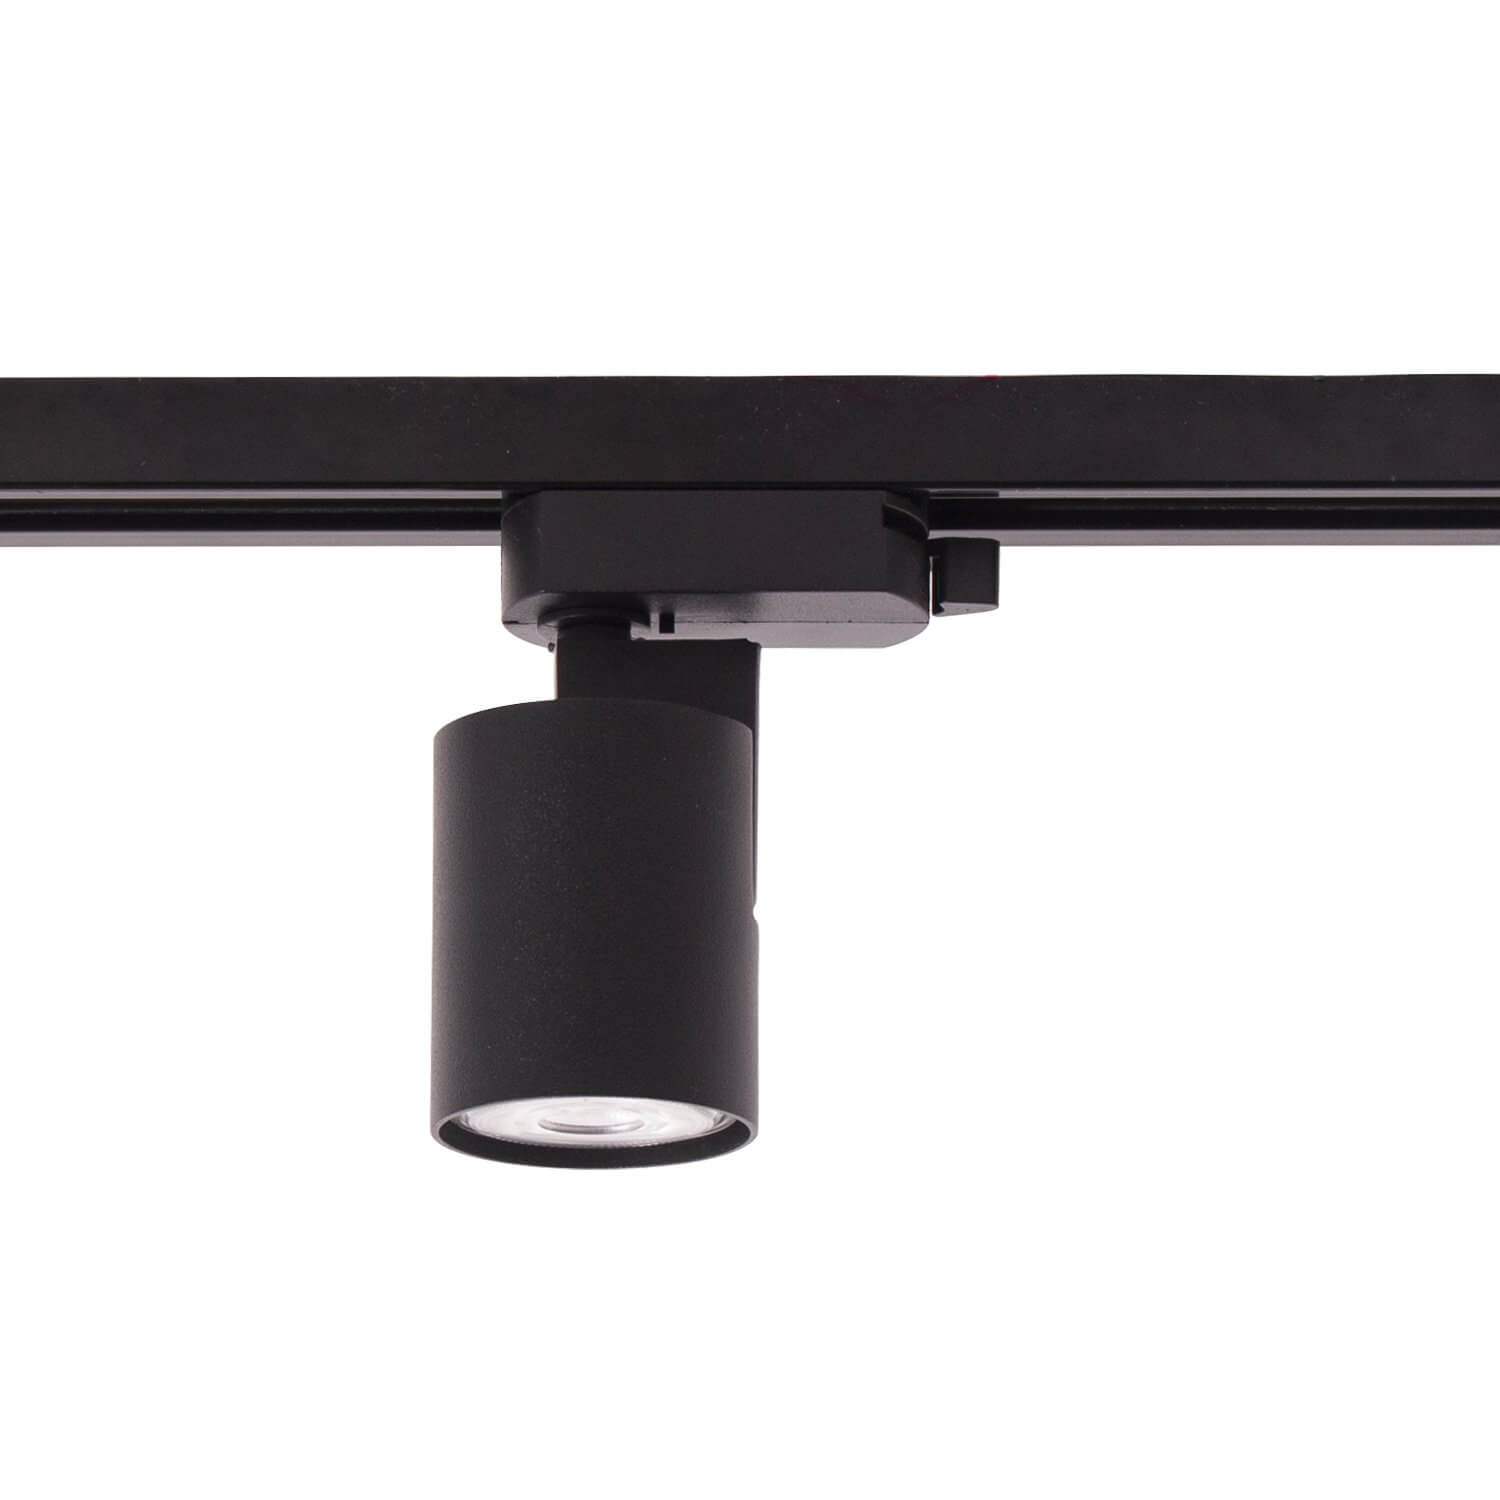 Spot pe sina NATAN negru - Spoturi mici din metal, aplicate pe sina, design minimalist